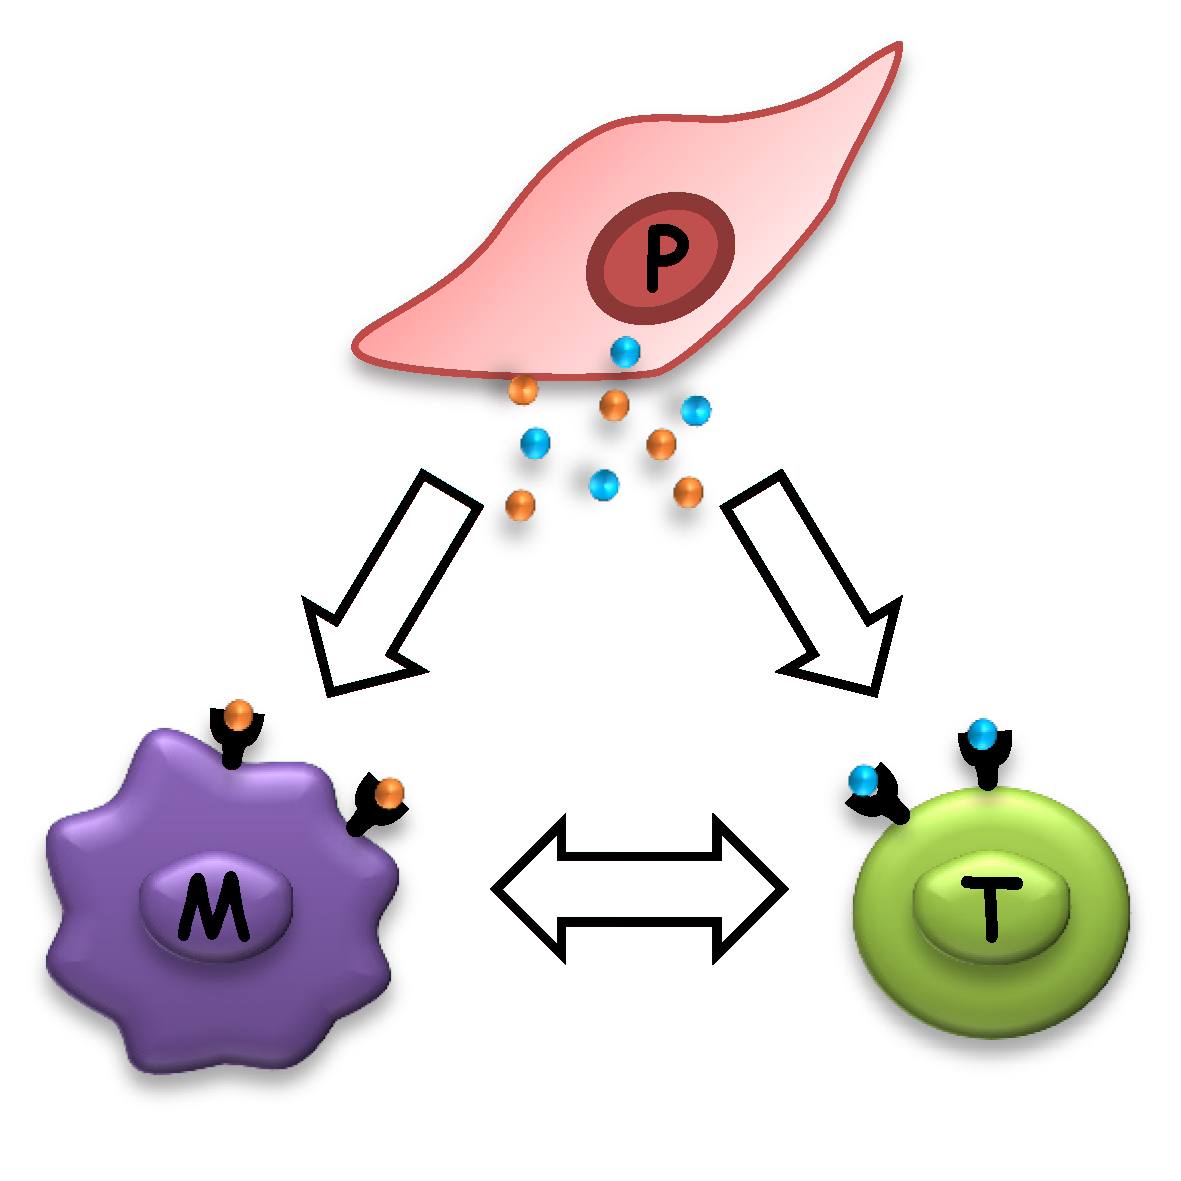 Celler från moderkakan (placentan, P) bildar molekyler som påverkar makrofager (M) och T-celler (T). Dessa celler påverkar i sin tur varandra för att skapa tolerans mot fostret.  